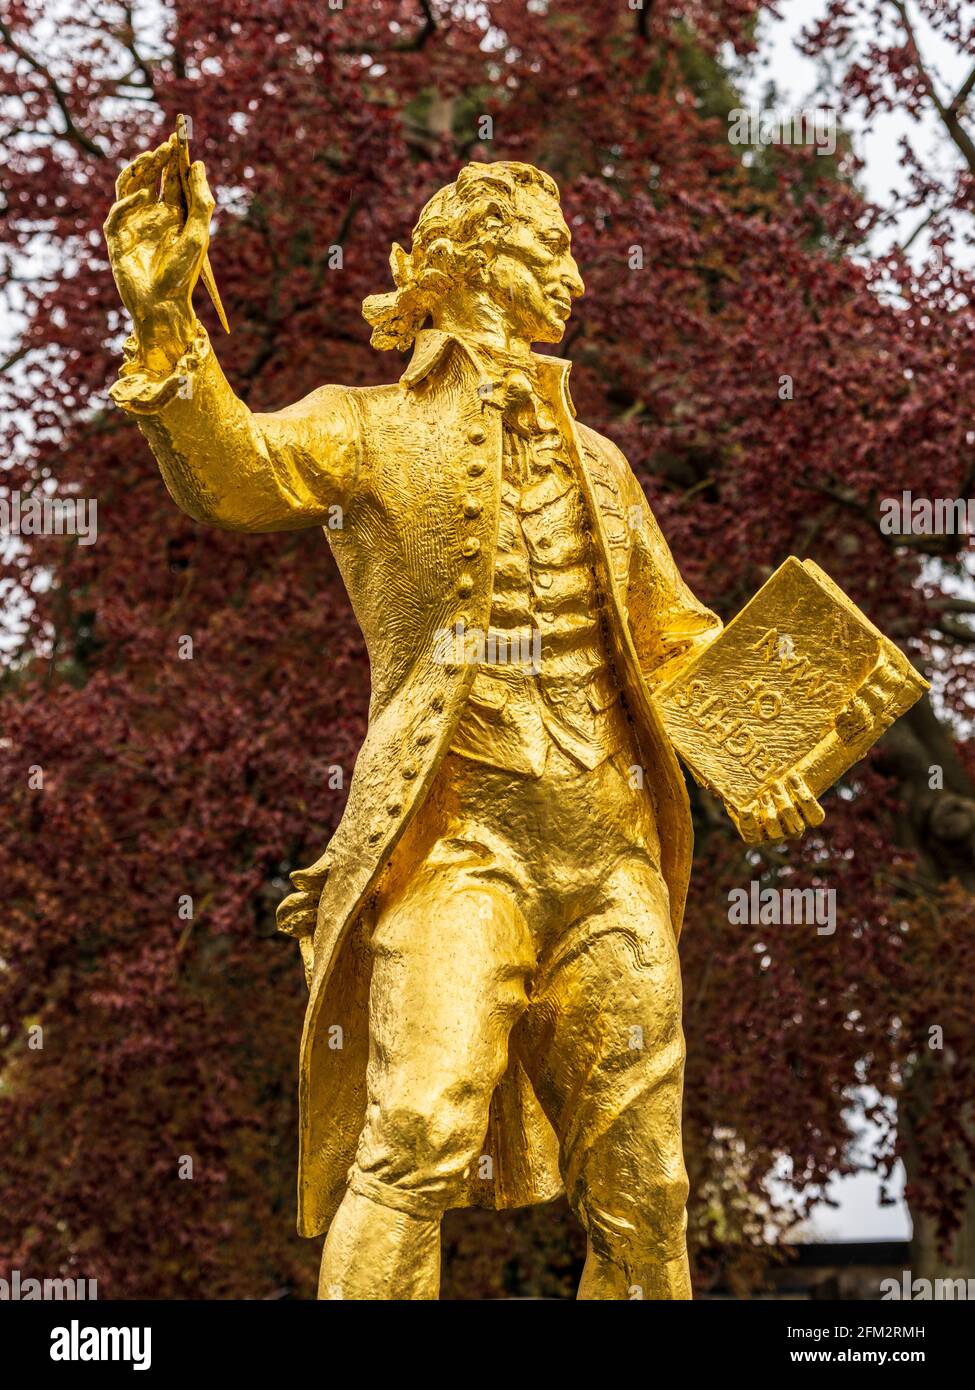 Thomas Paine Thetford - statue de Thomas Paine, l'un des pères fondateurs des USA - Naissance Thetford Norfolk UK - Sculpteur Sir Charles Thomas Wheeler Banque D'Images